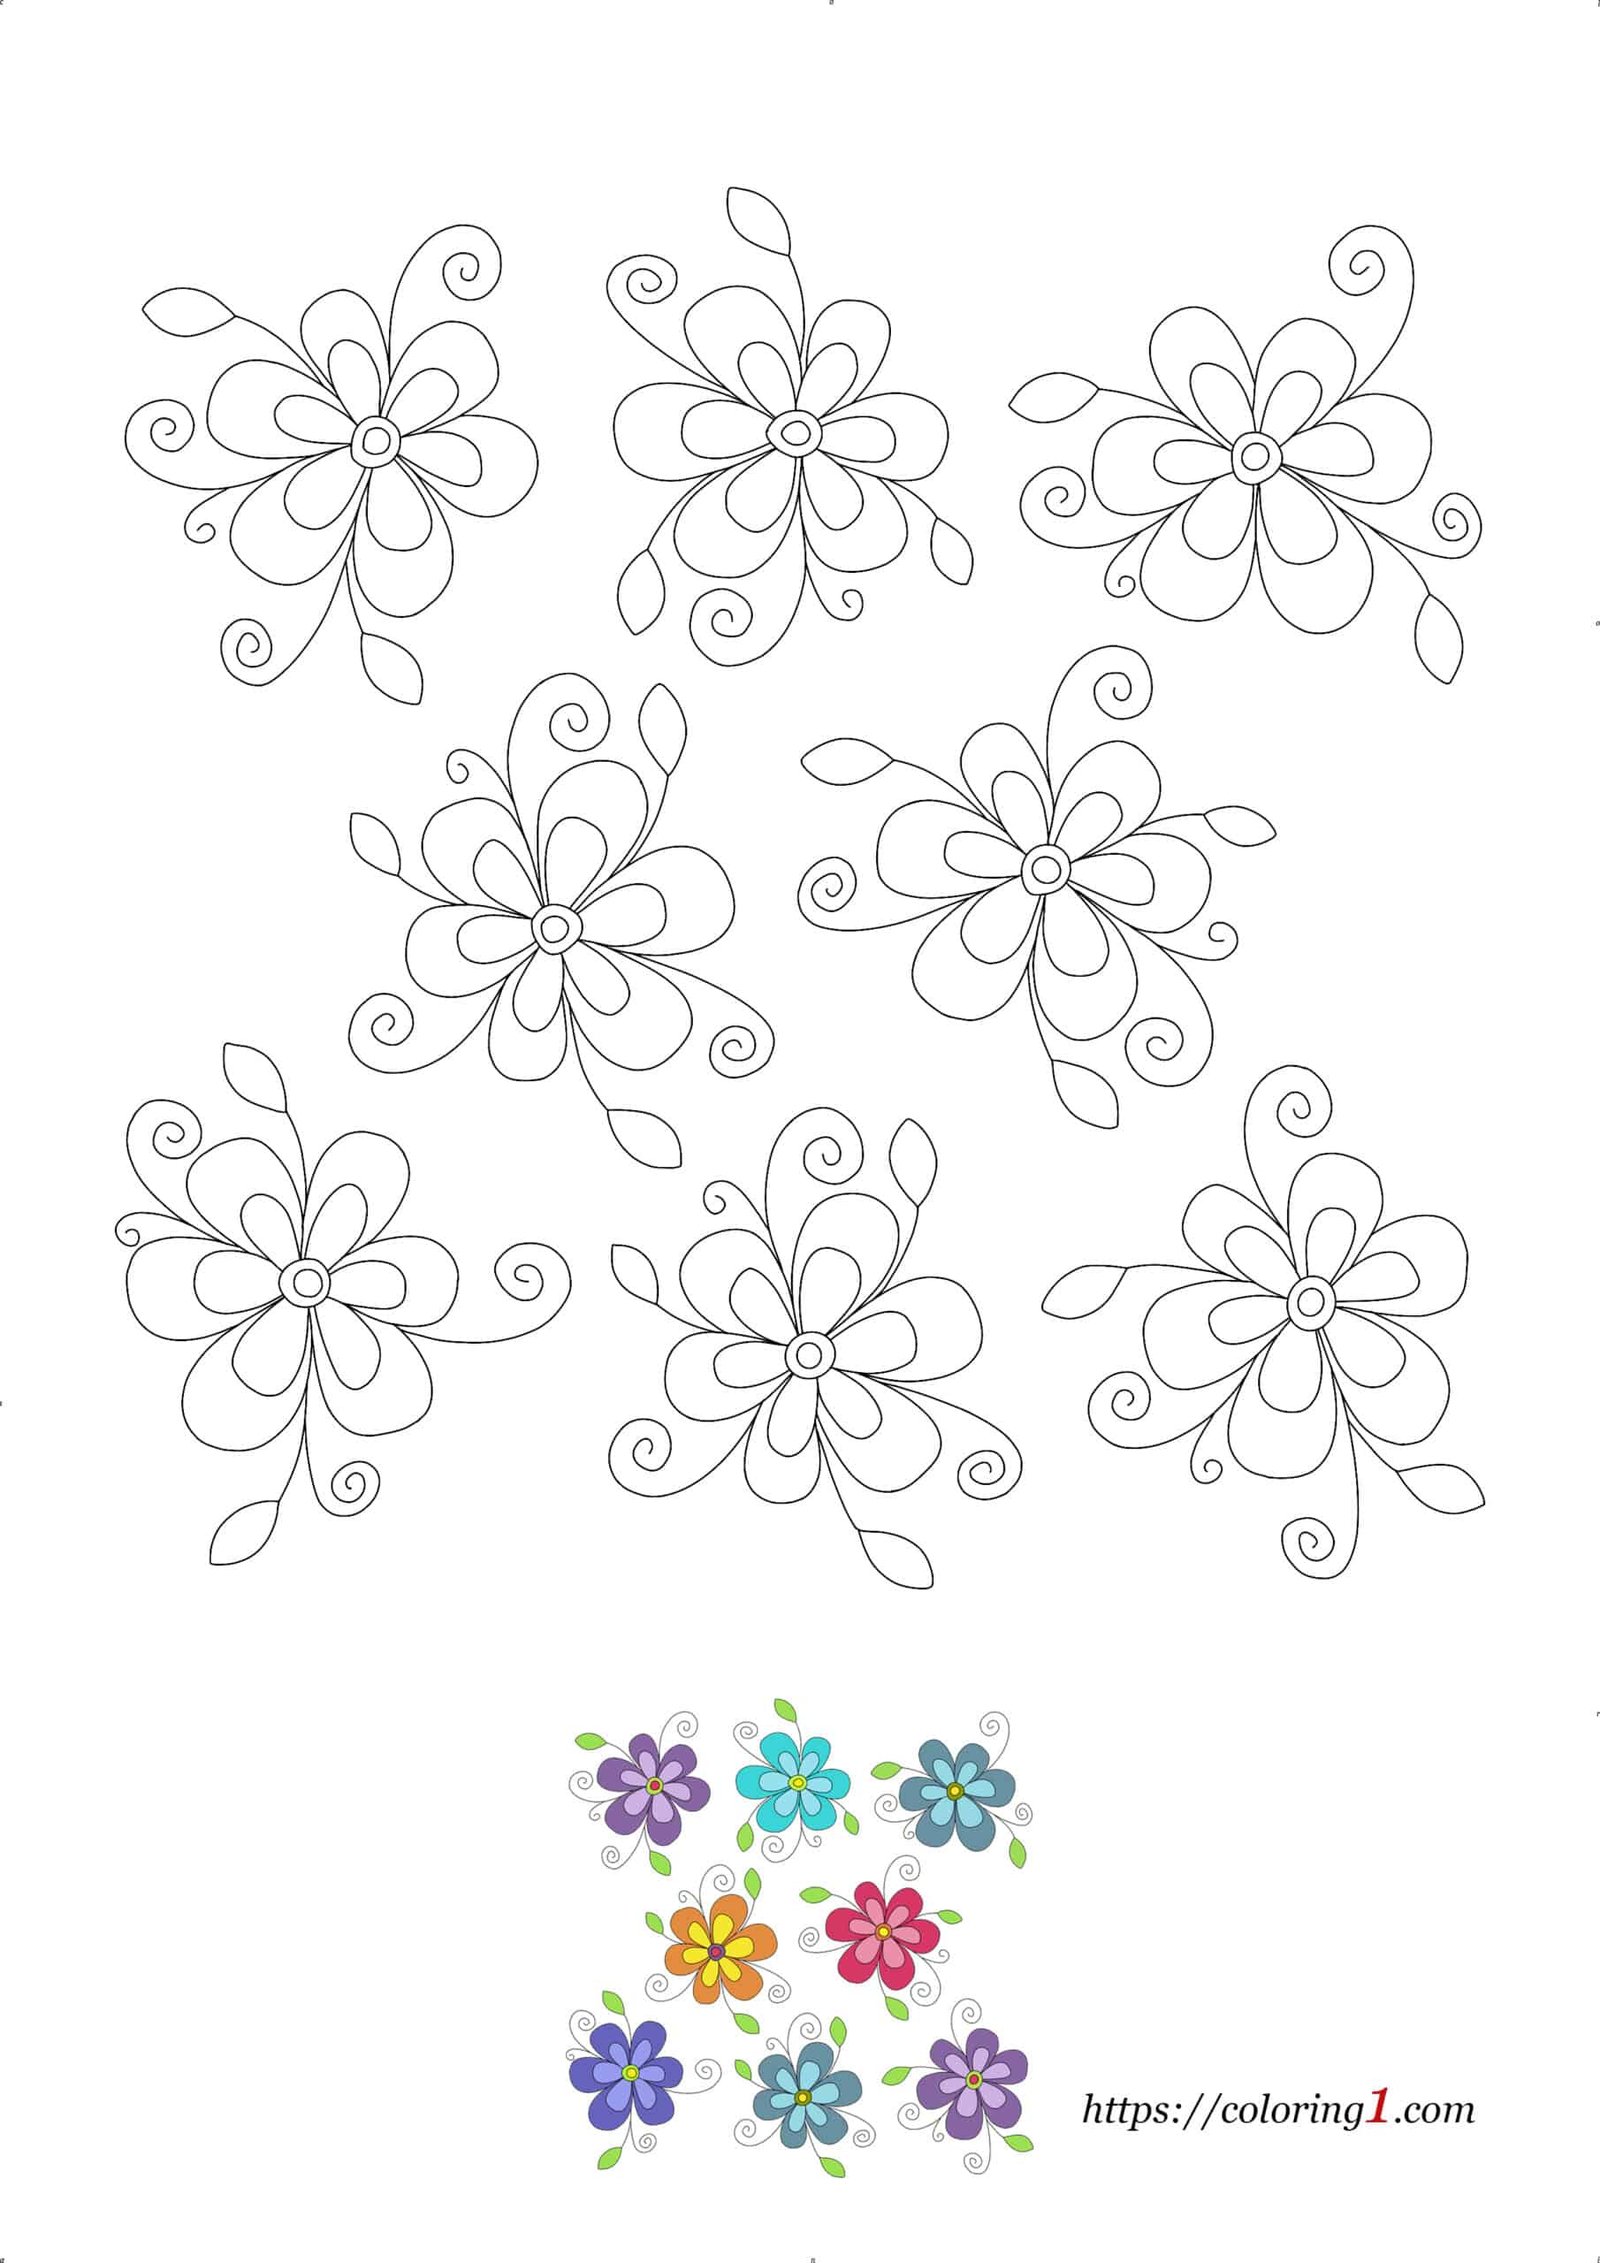 Coloriage Dessin Motifs a Fleurs à imprimer gratuit